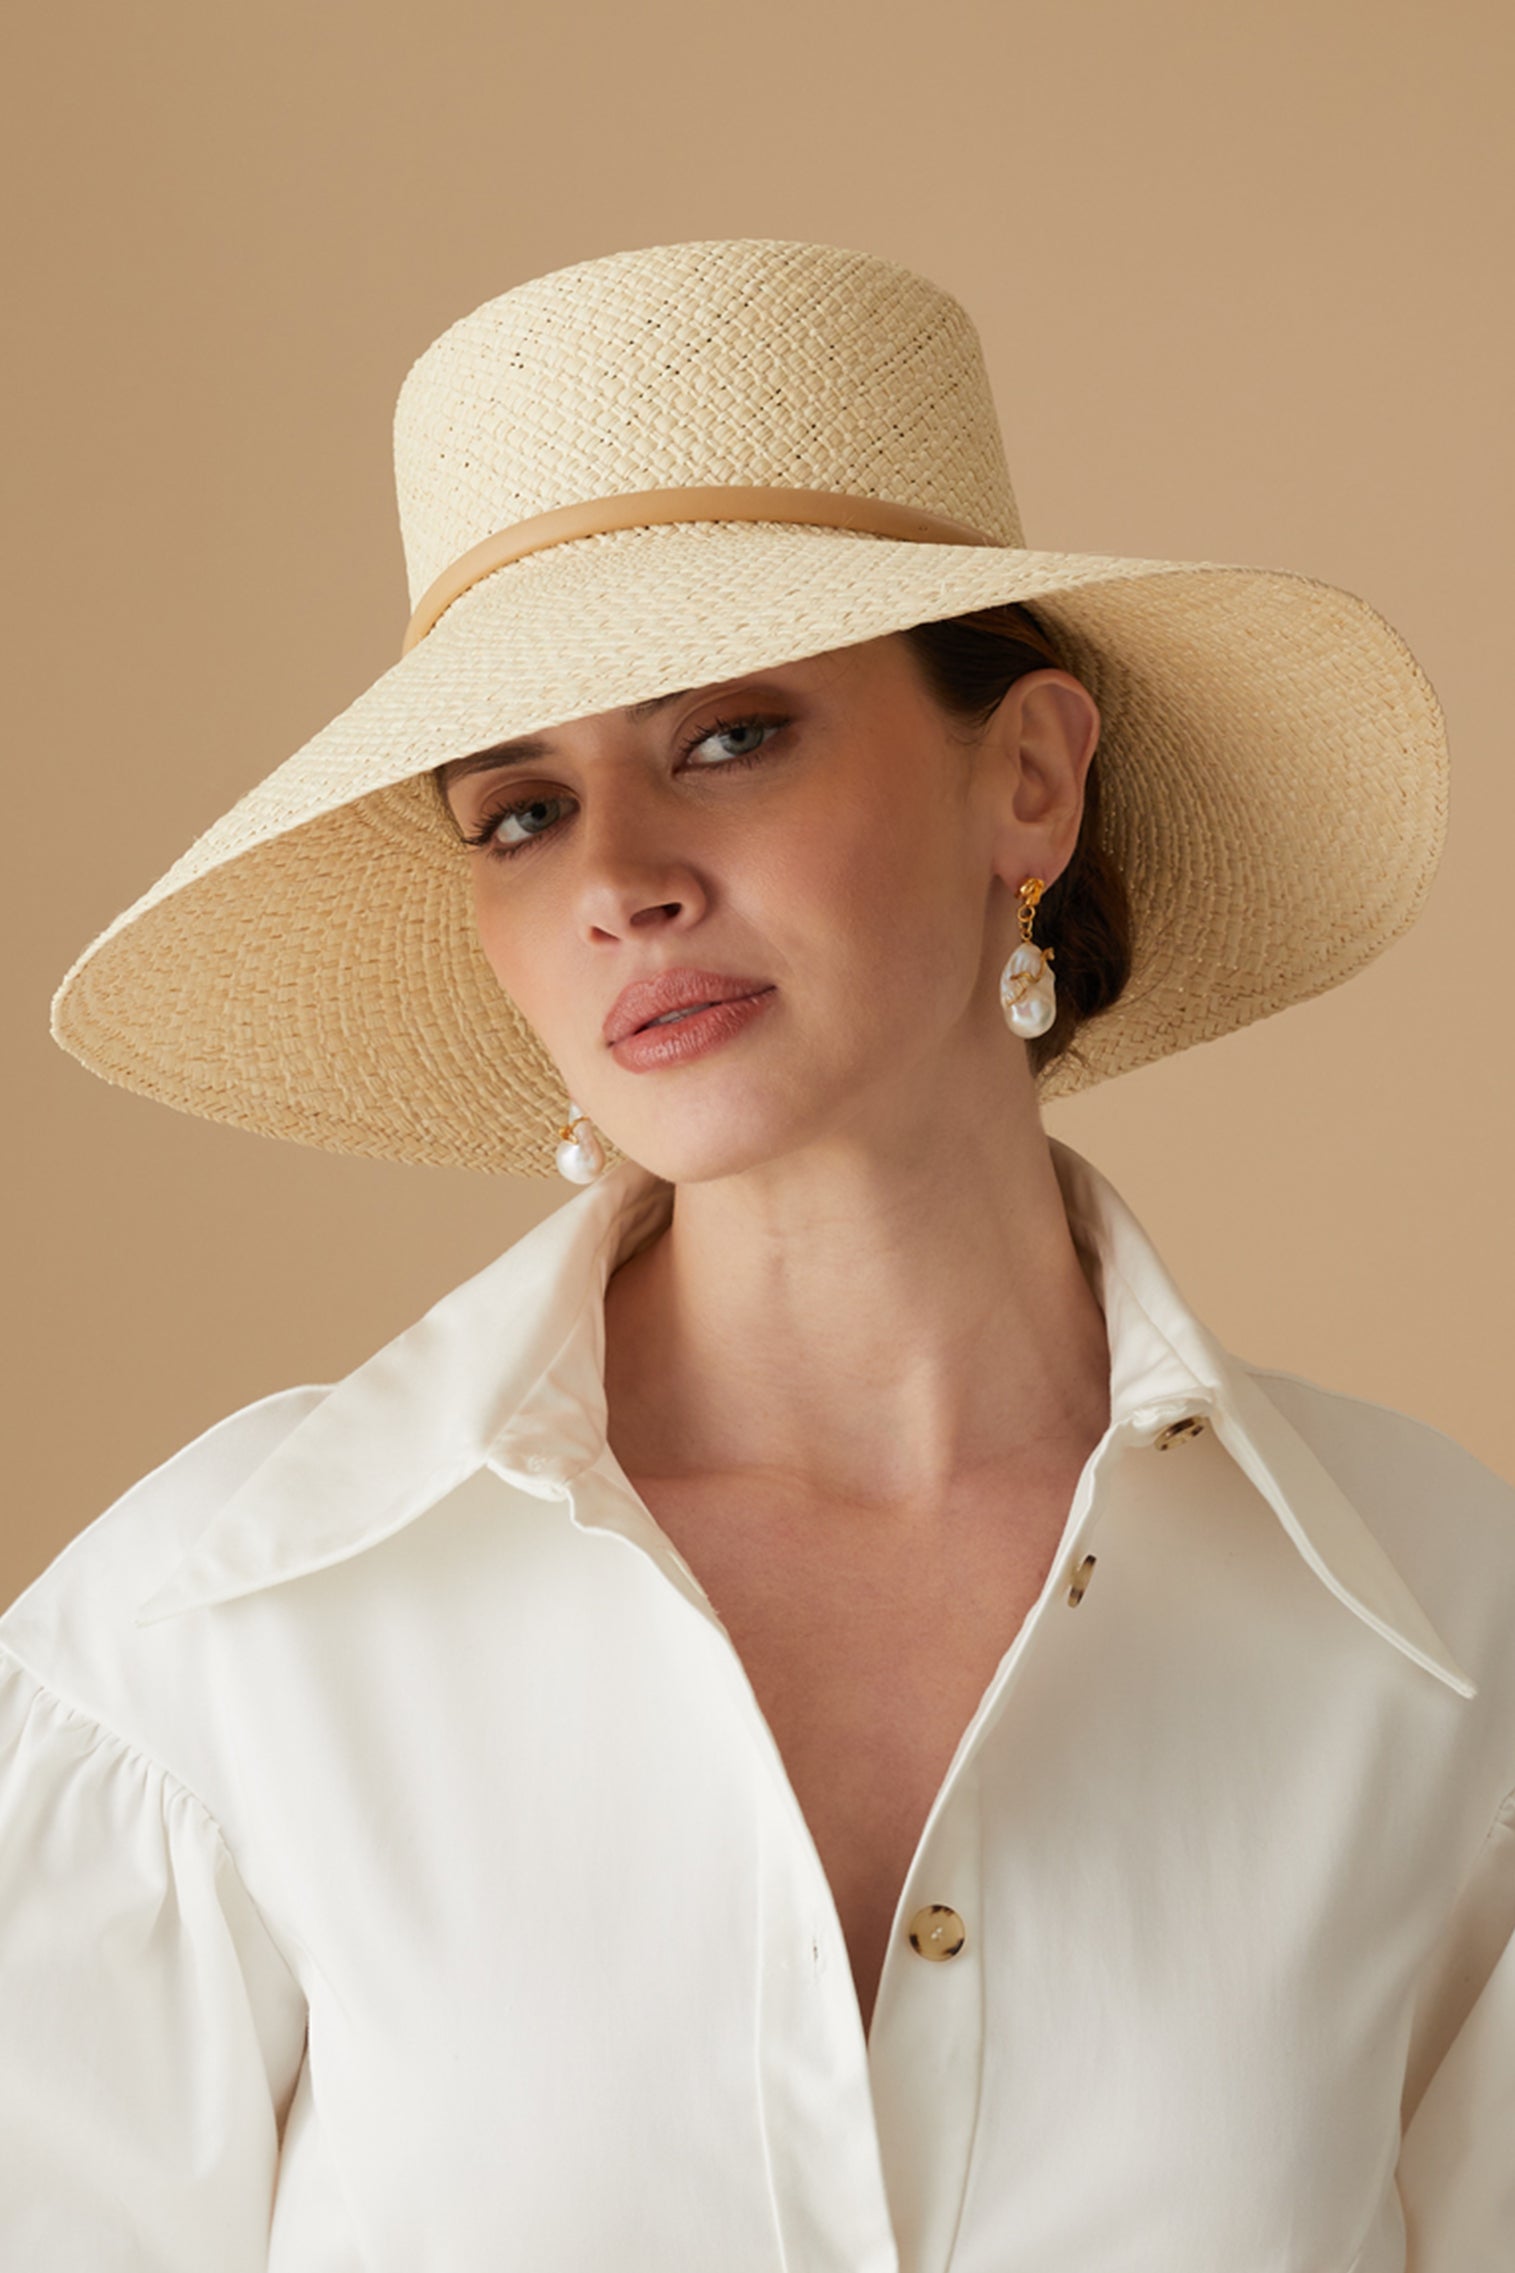 Willow Panama - Kentucky Derby Hats for Women - Lock & Co. Hatters London UK